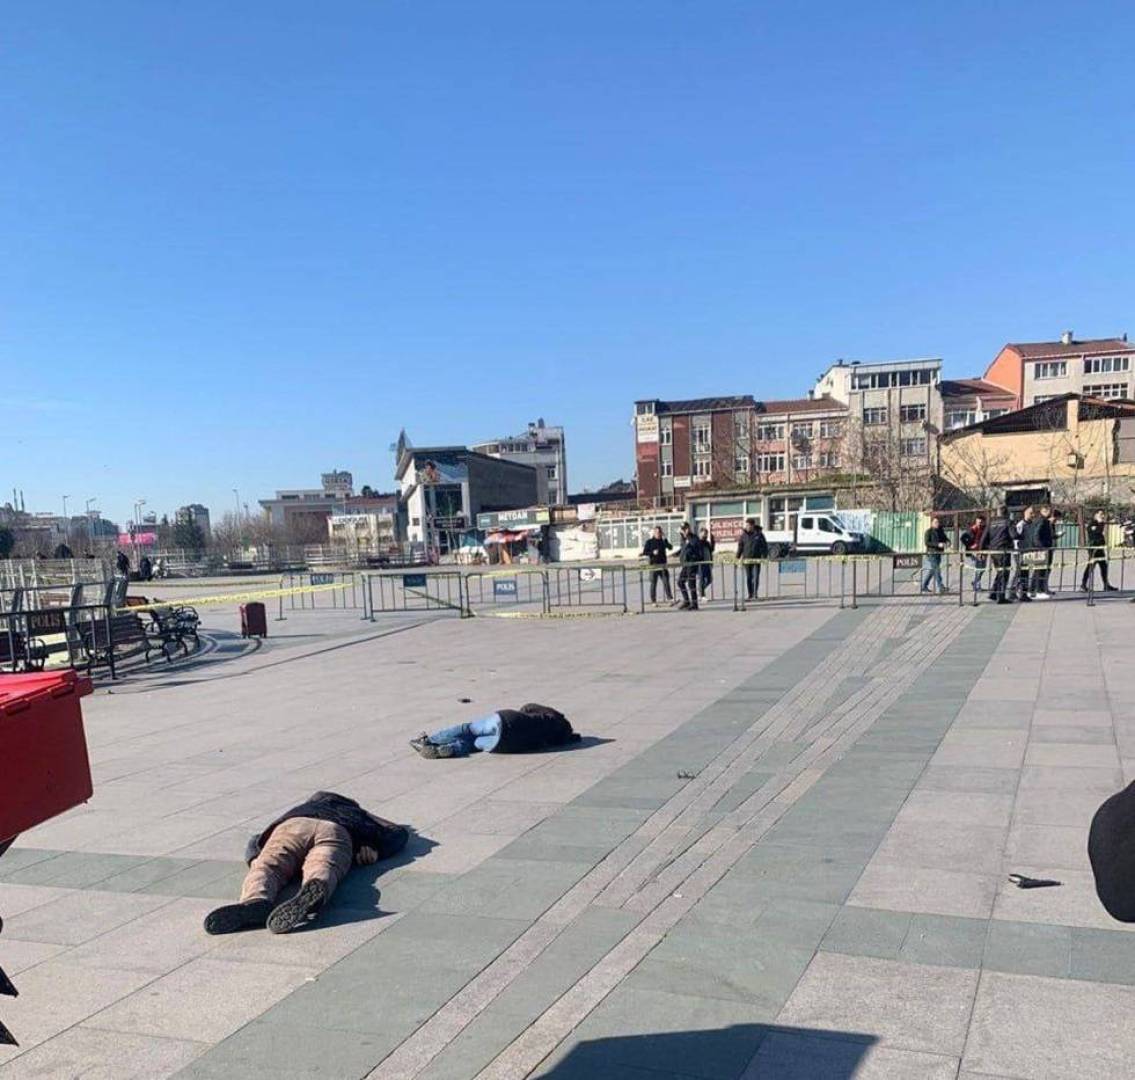 قتلى وجرحى بهجوم قرب مجمع المحاكم في إسطنبول (فيديو+ صور)